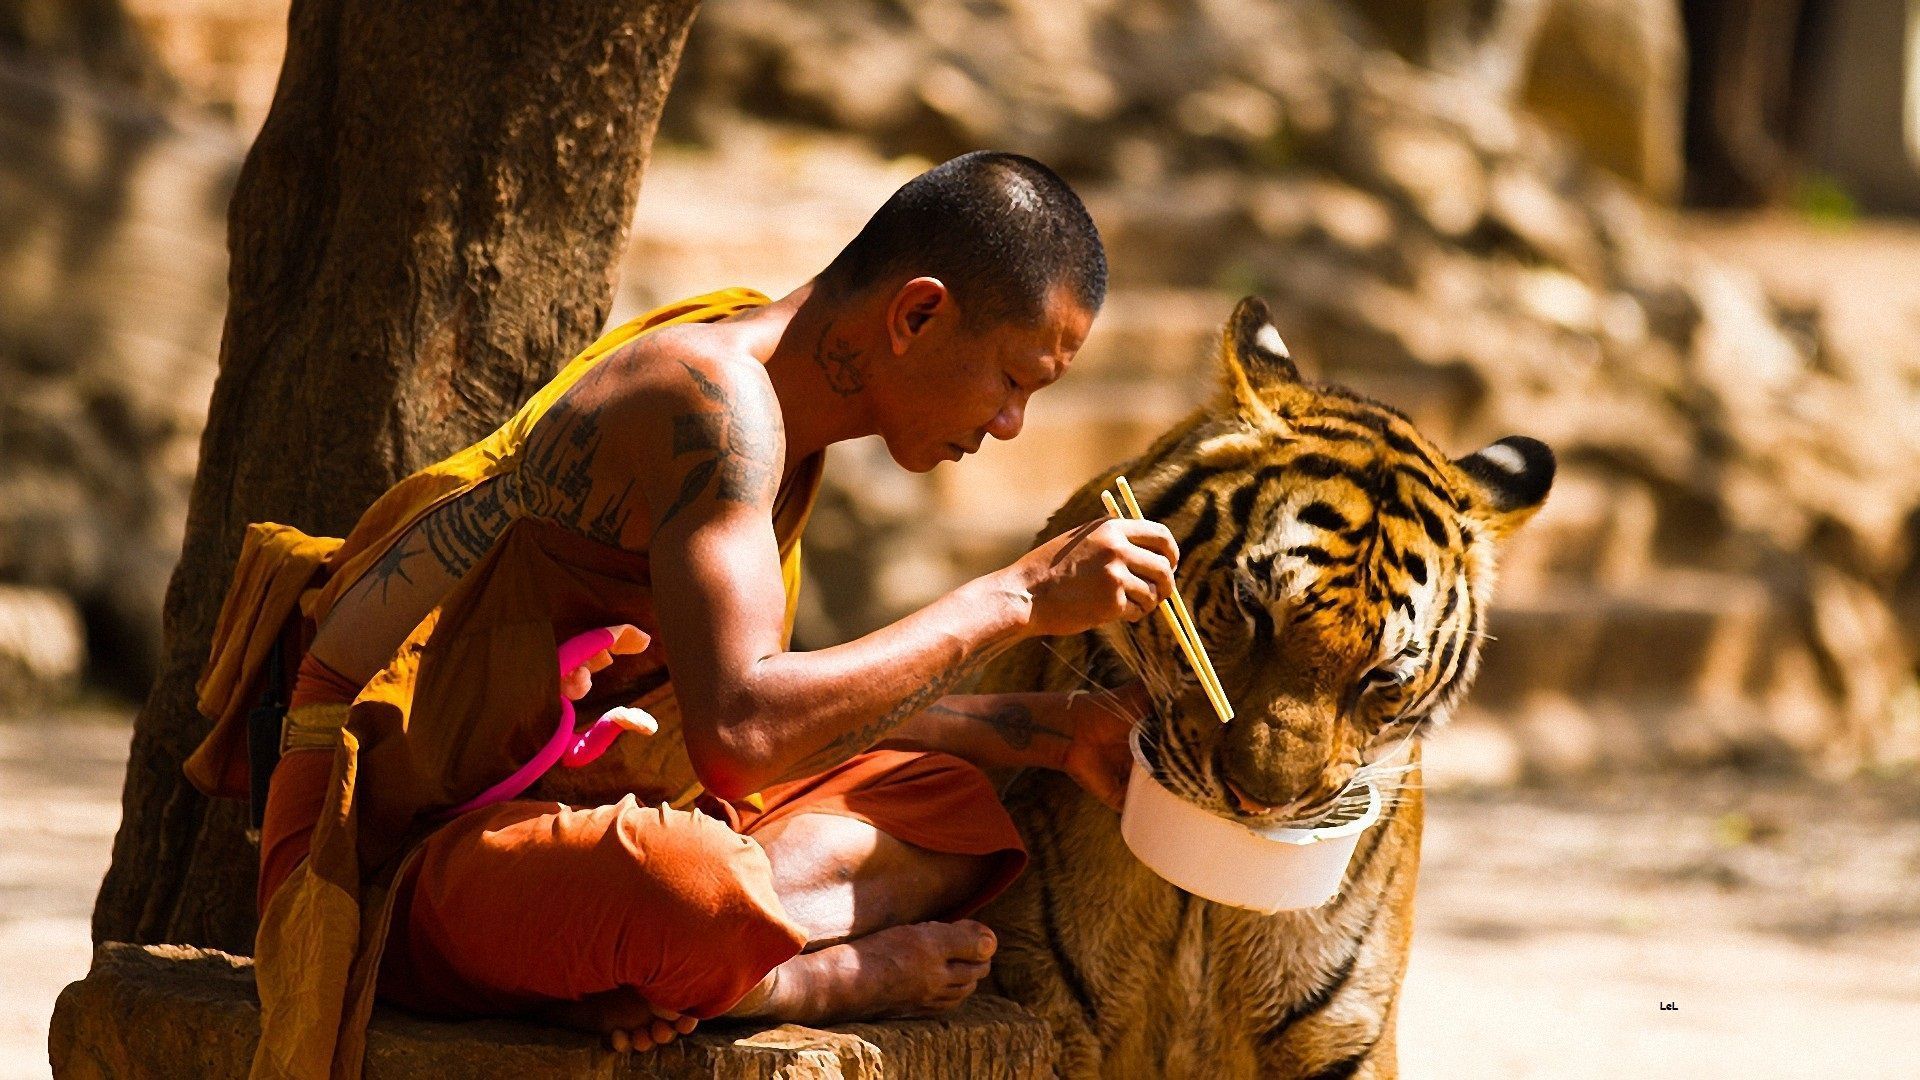 Monk Feeding A Tiger HD Wallpaper | 1920x1080 | ID:44615